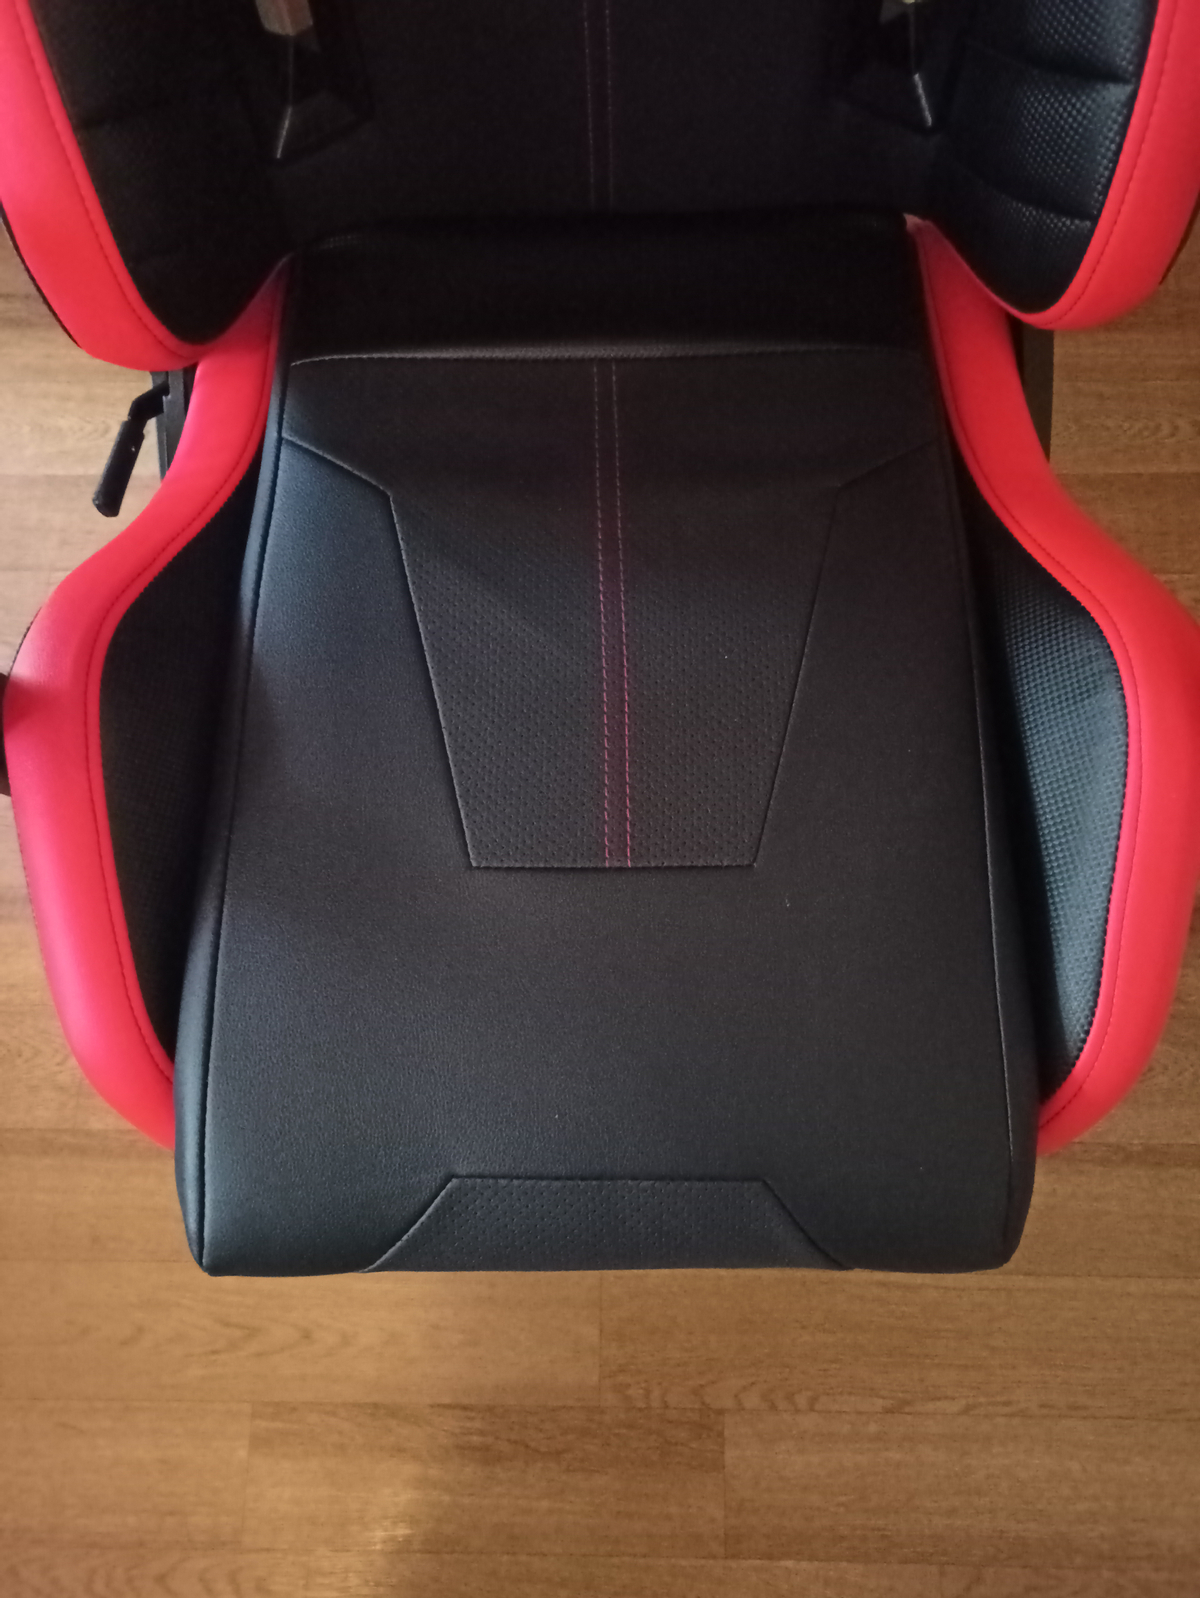 Обзор игрового кресла ThunderX3 TC5 Ember Red